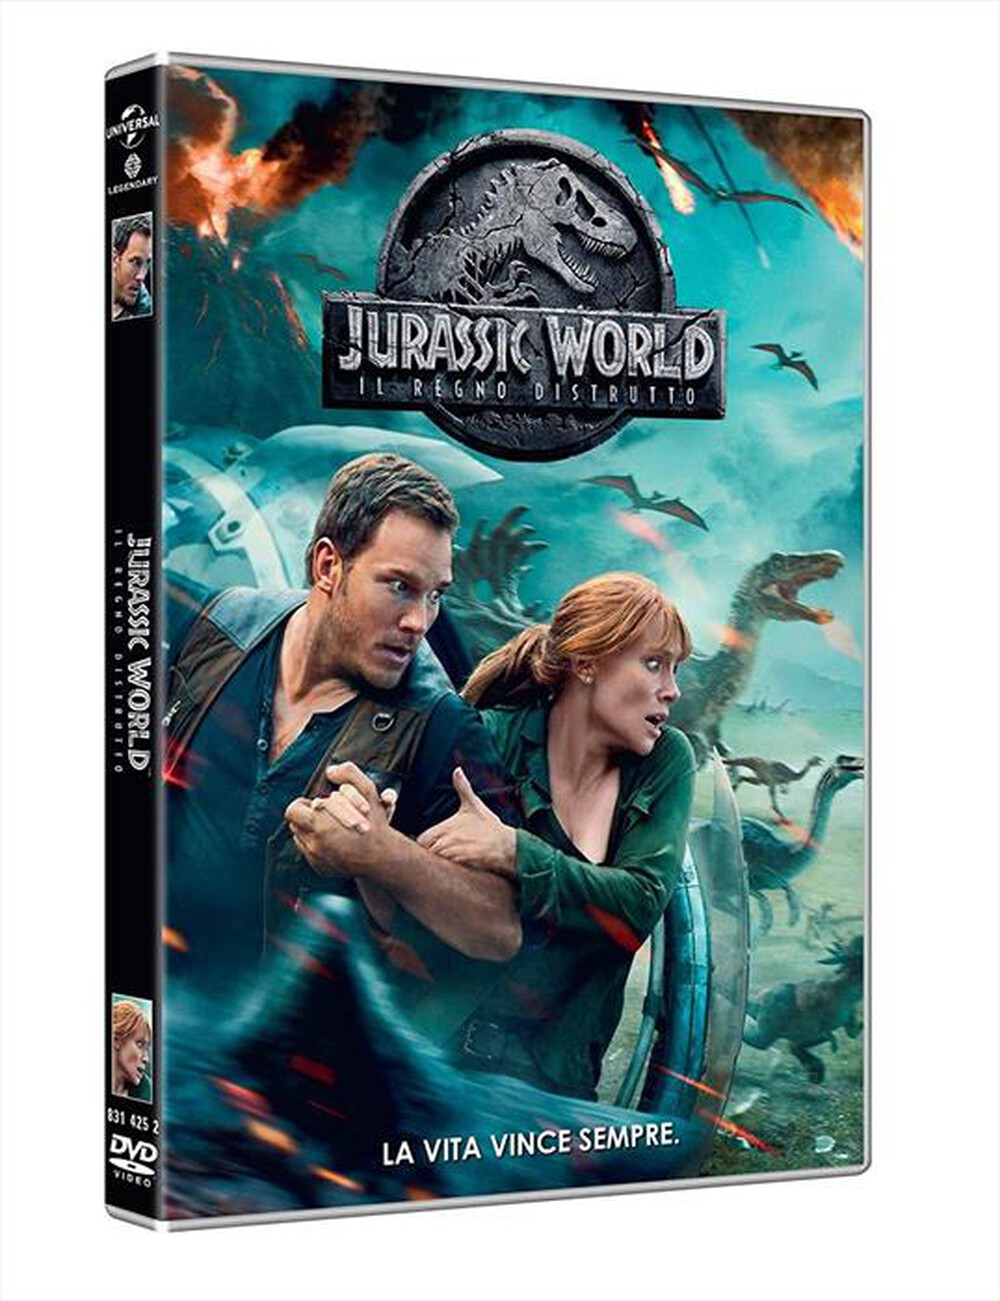 "WARNER HOME VIDEO - Jurassic World: Il Regno Distrutto"